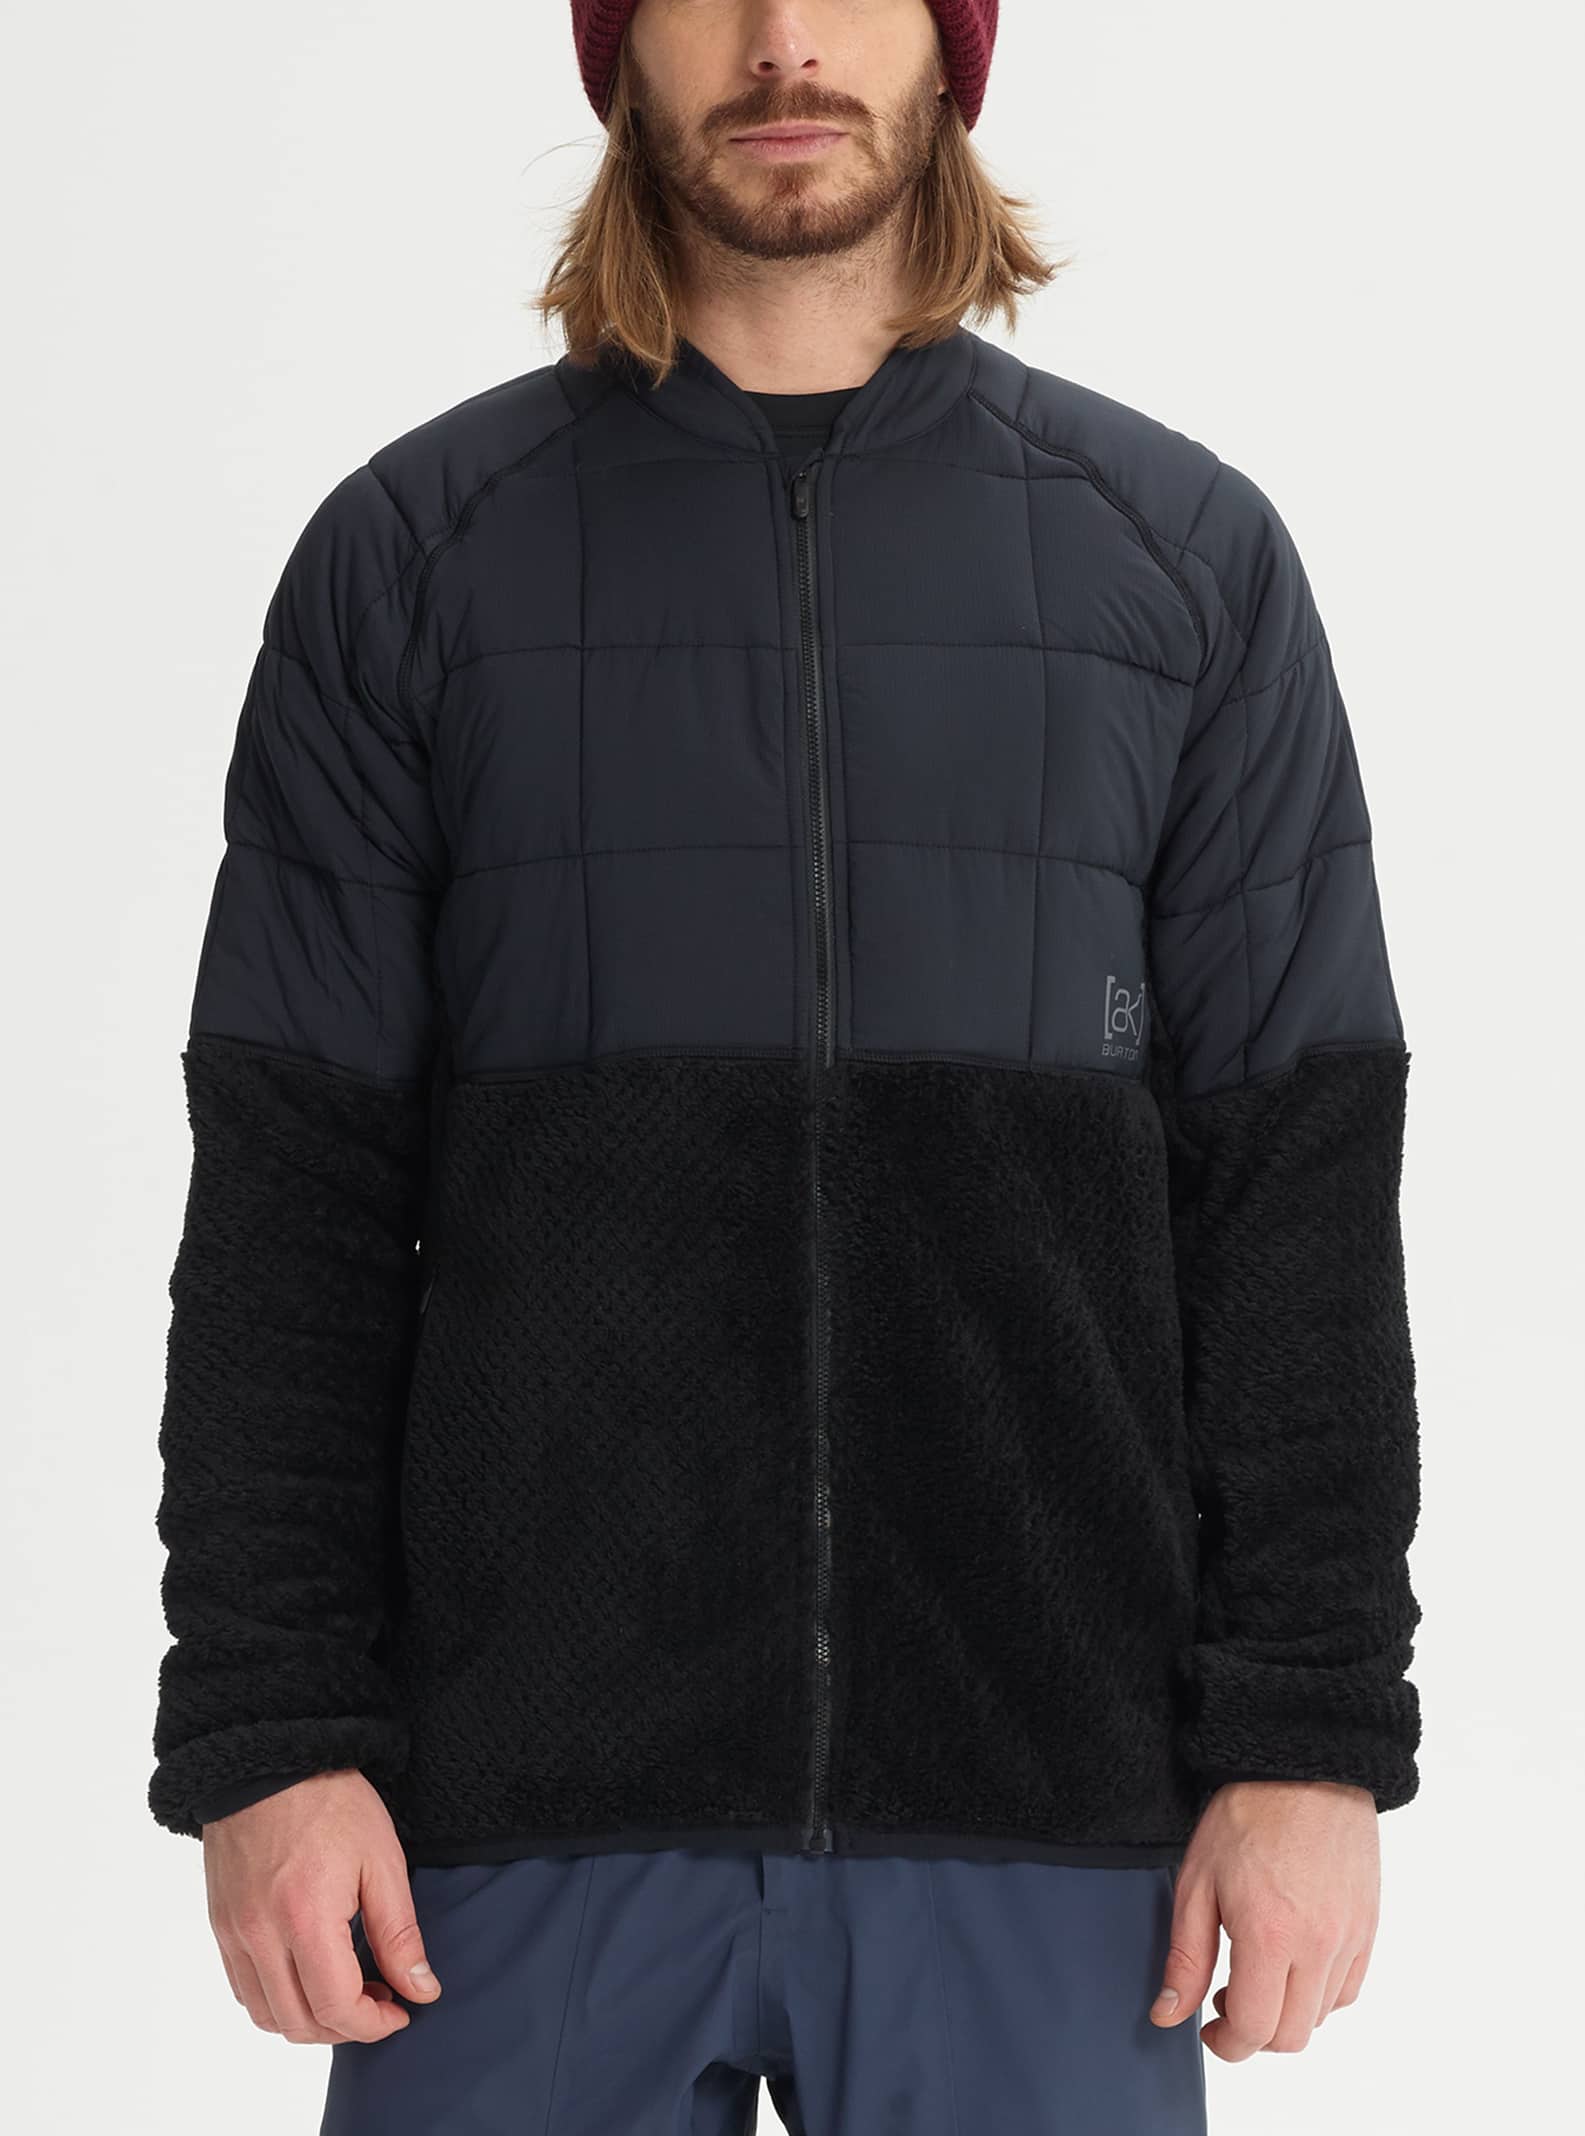 Men's Burton [ak]® Hybrid Jacket | Burton.com Winter 2019 US